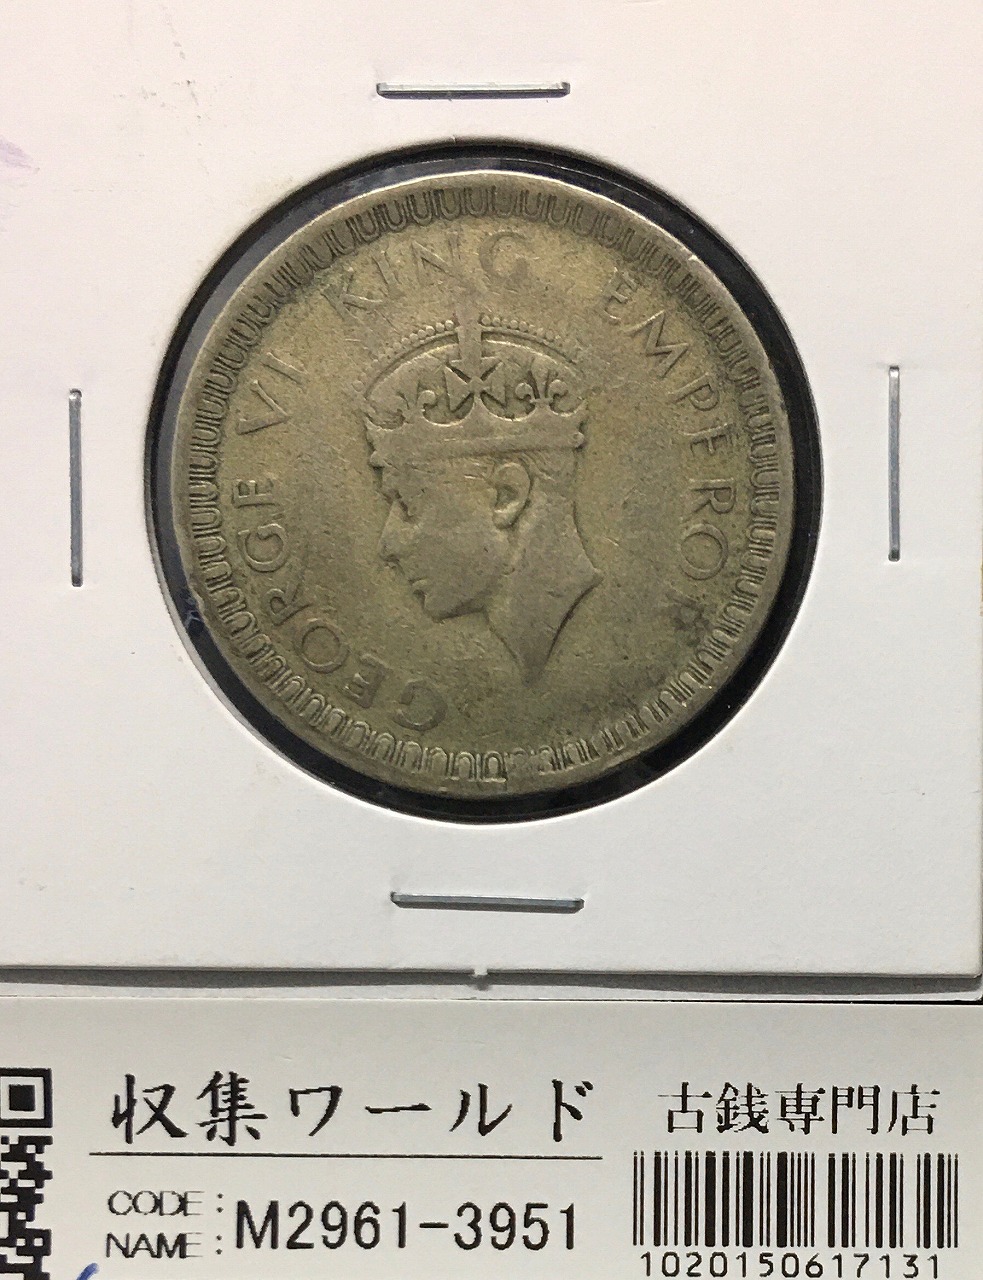 イギリス領/英領インド 1ルピー銀貨 1942年銘 ジョージ6世像 銀500 美品